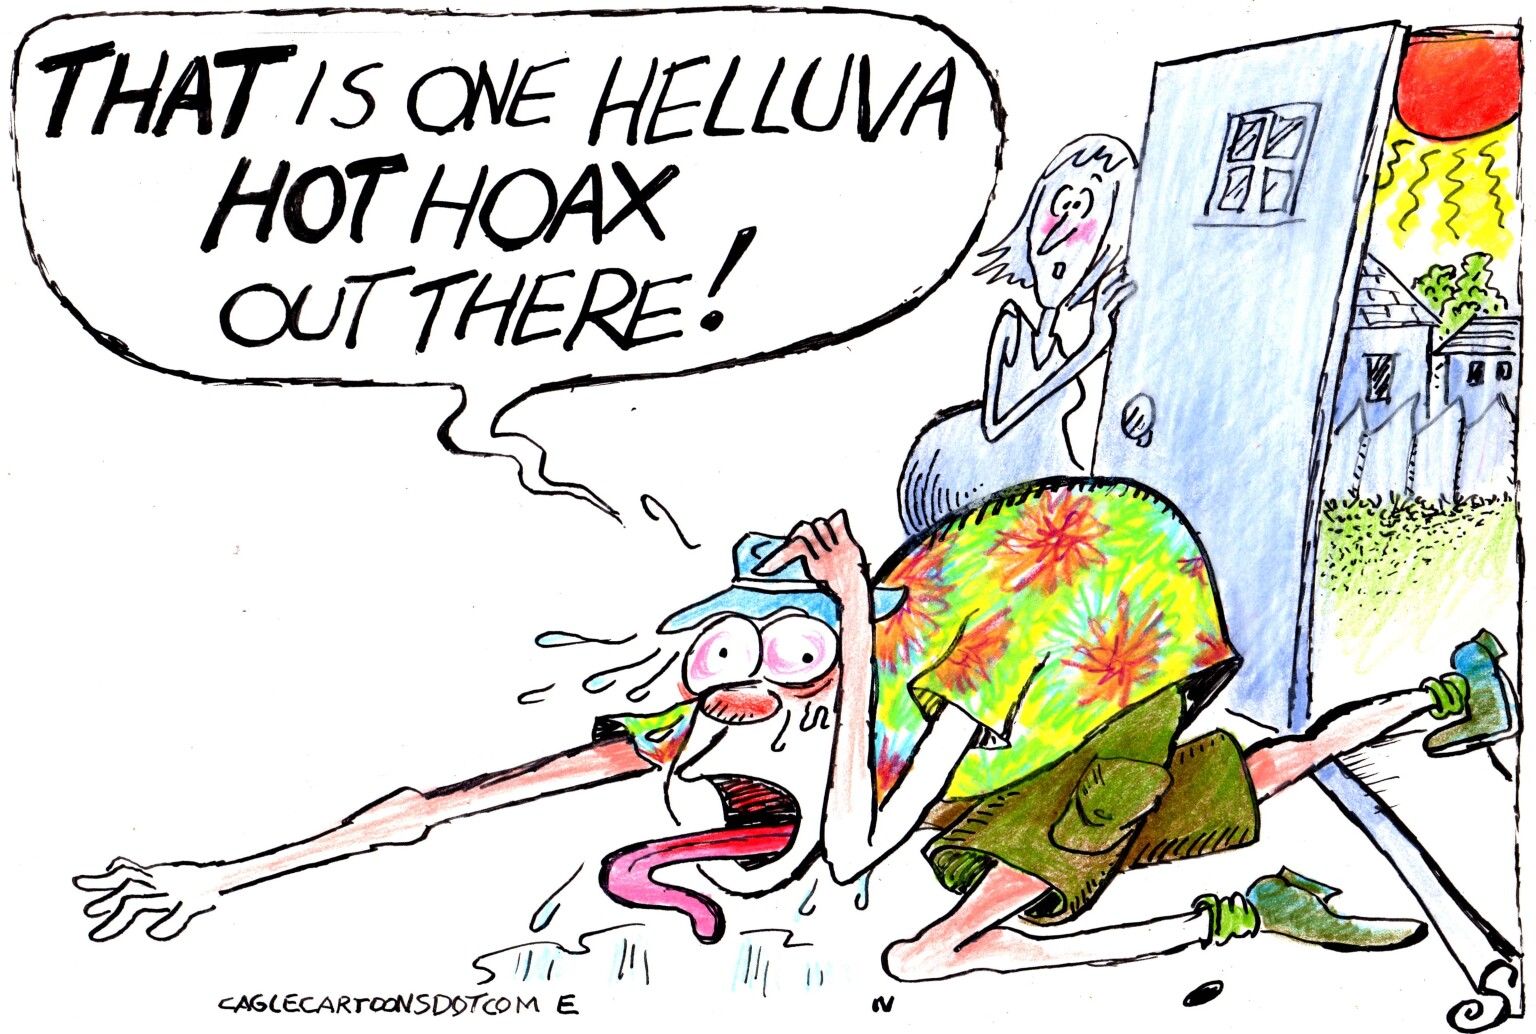 newsjustin.press - editorial cartoon - GLOBAL WARMING IS A HOAX